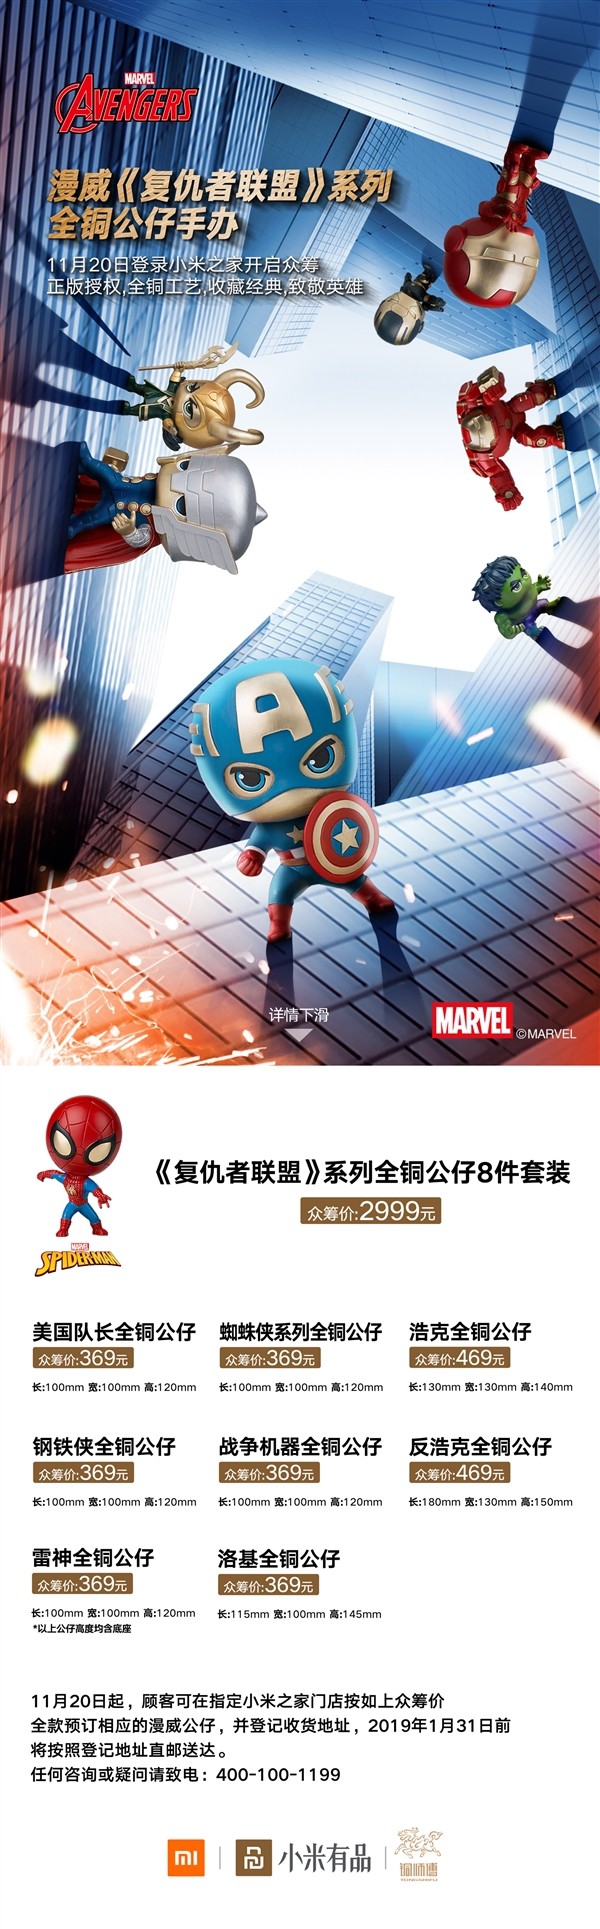 Xiaomi gây vốn cộng đồng cho dự án sản xuất mô hình đồ chơi siêu anh hùng Marvel, giá hàng triệu đồng/1 con, 10 triệu/8 con